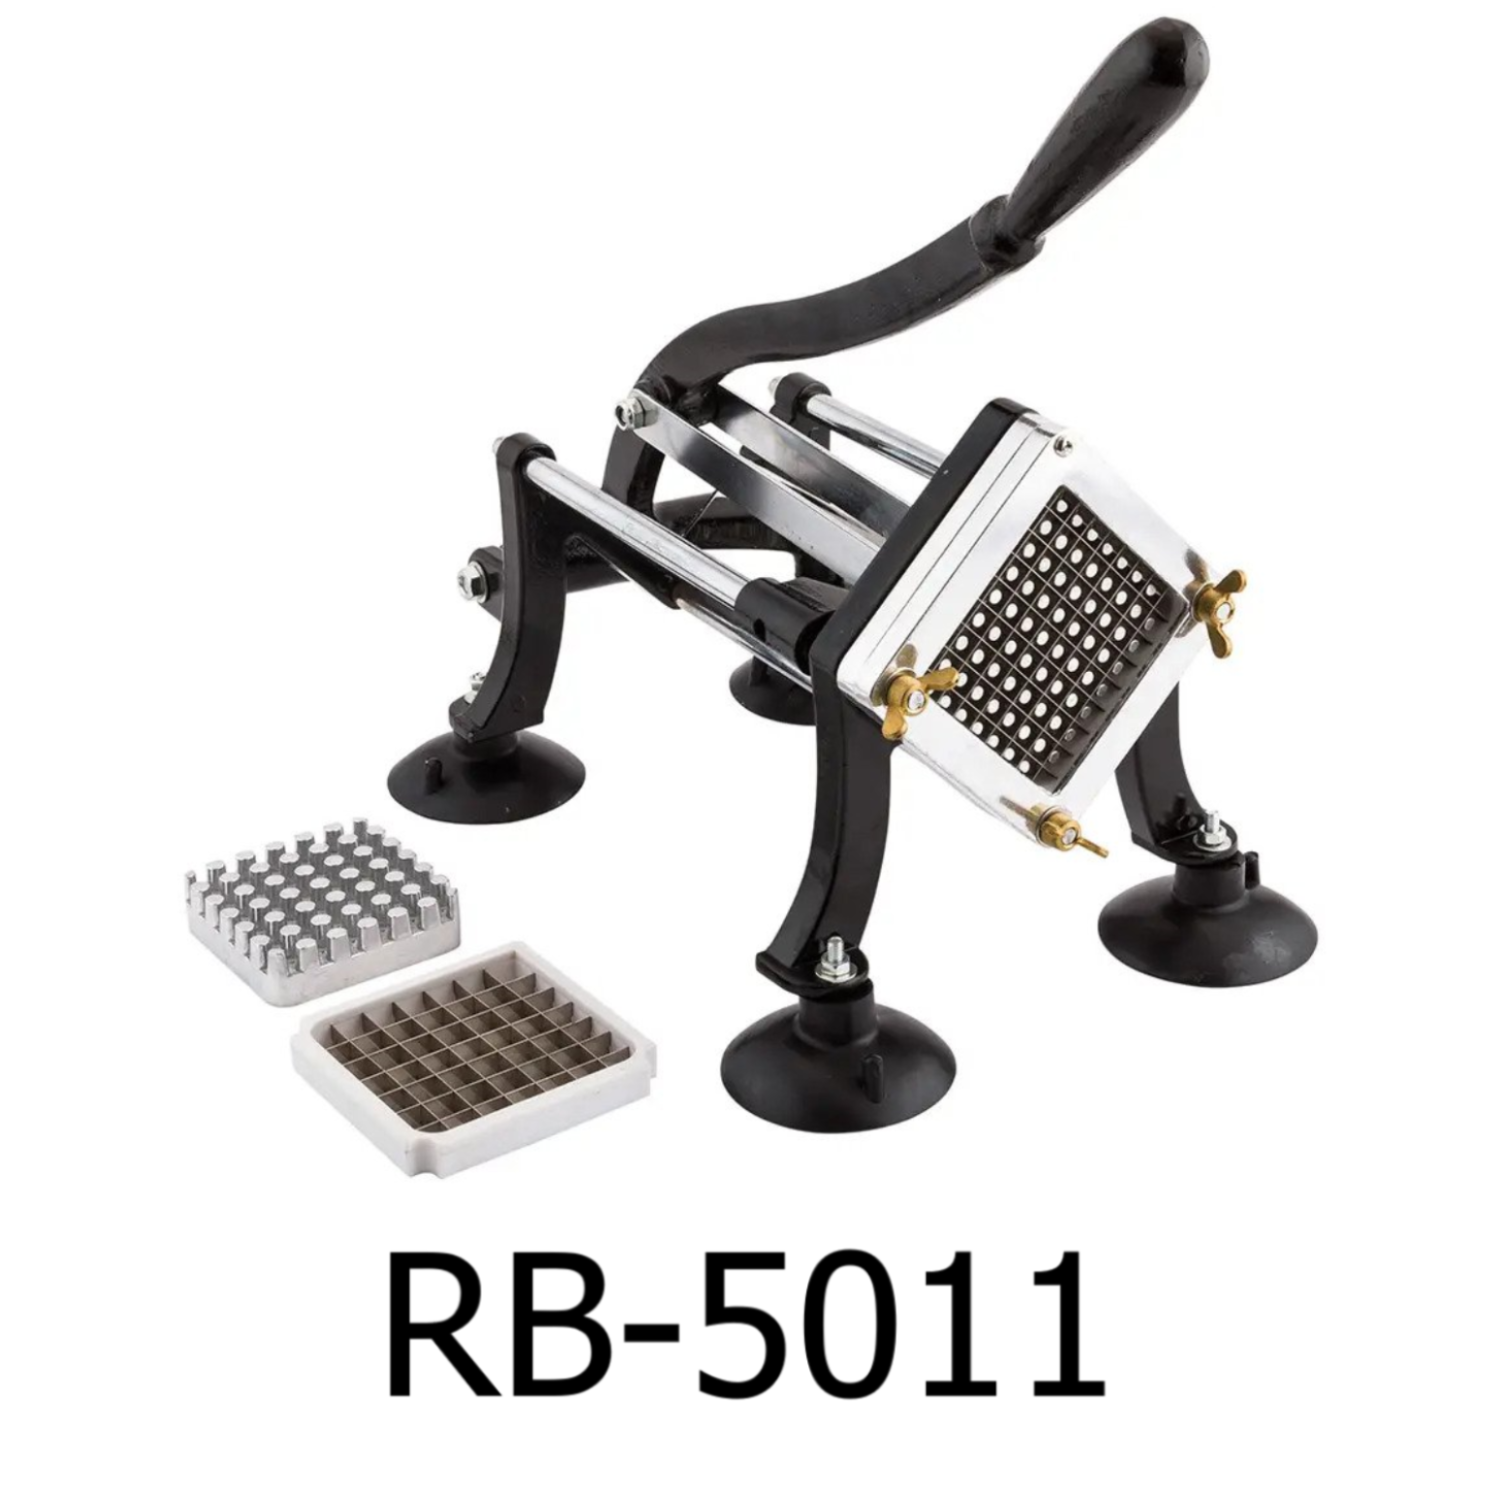 http://www.randbimport.com/cdn/shop/products/RB-5011.png?v=1675985083